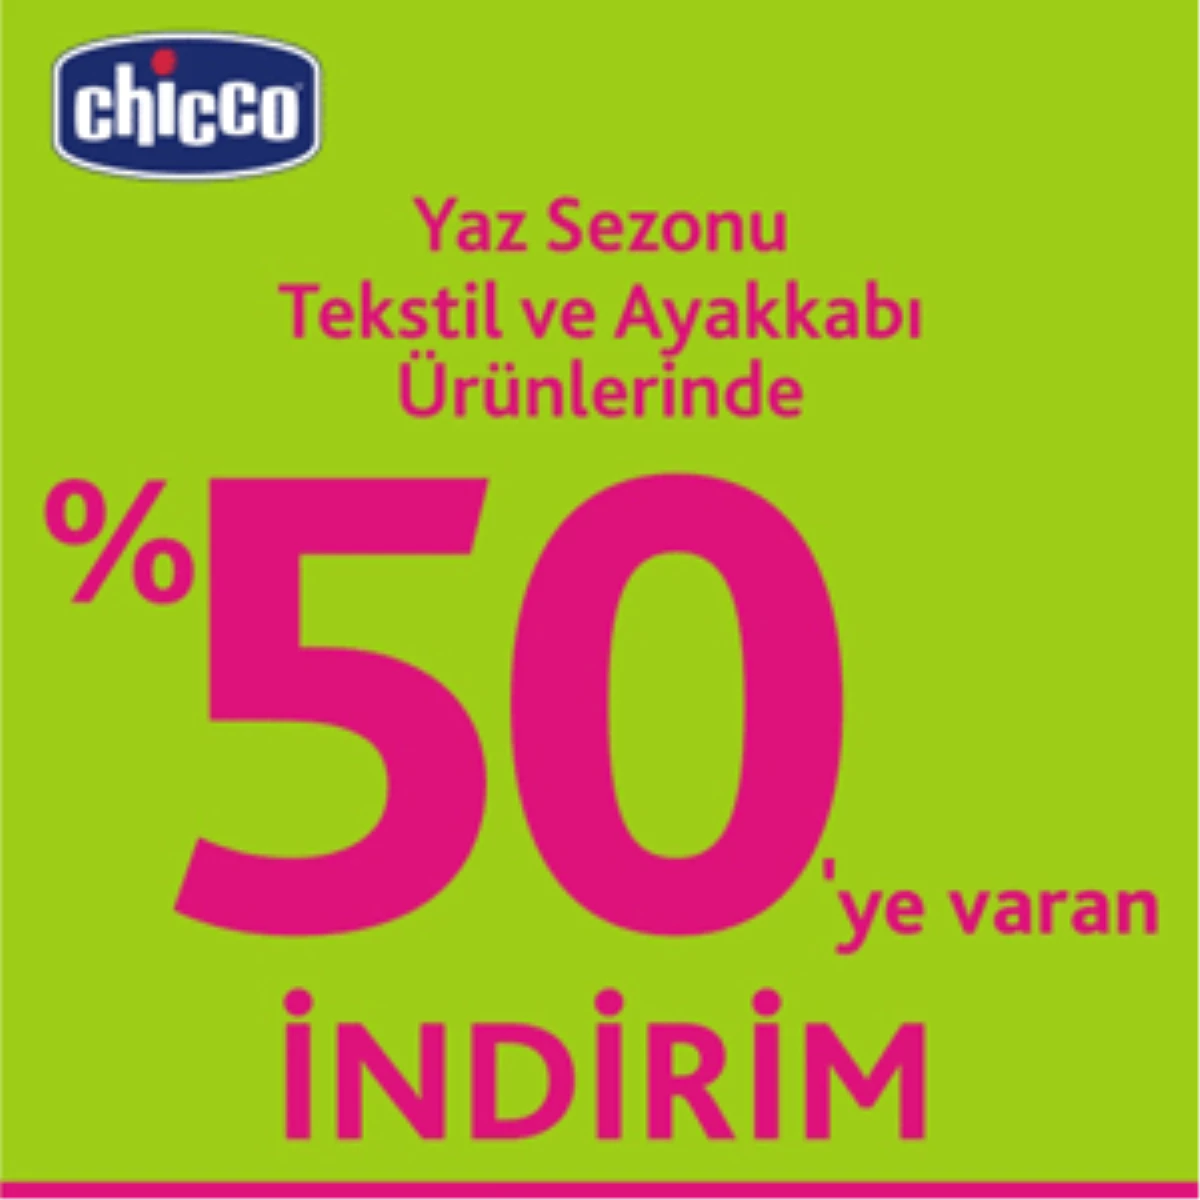 Chicco, Yaz Sezonu Tekstil Ve Ayakkabı Ürünlerinde % 50’ye Varan İndirim Başladı
